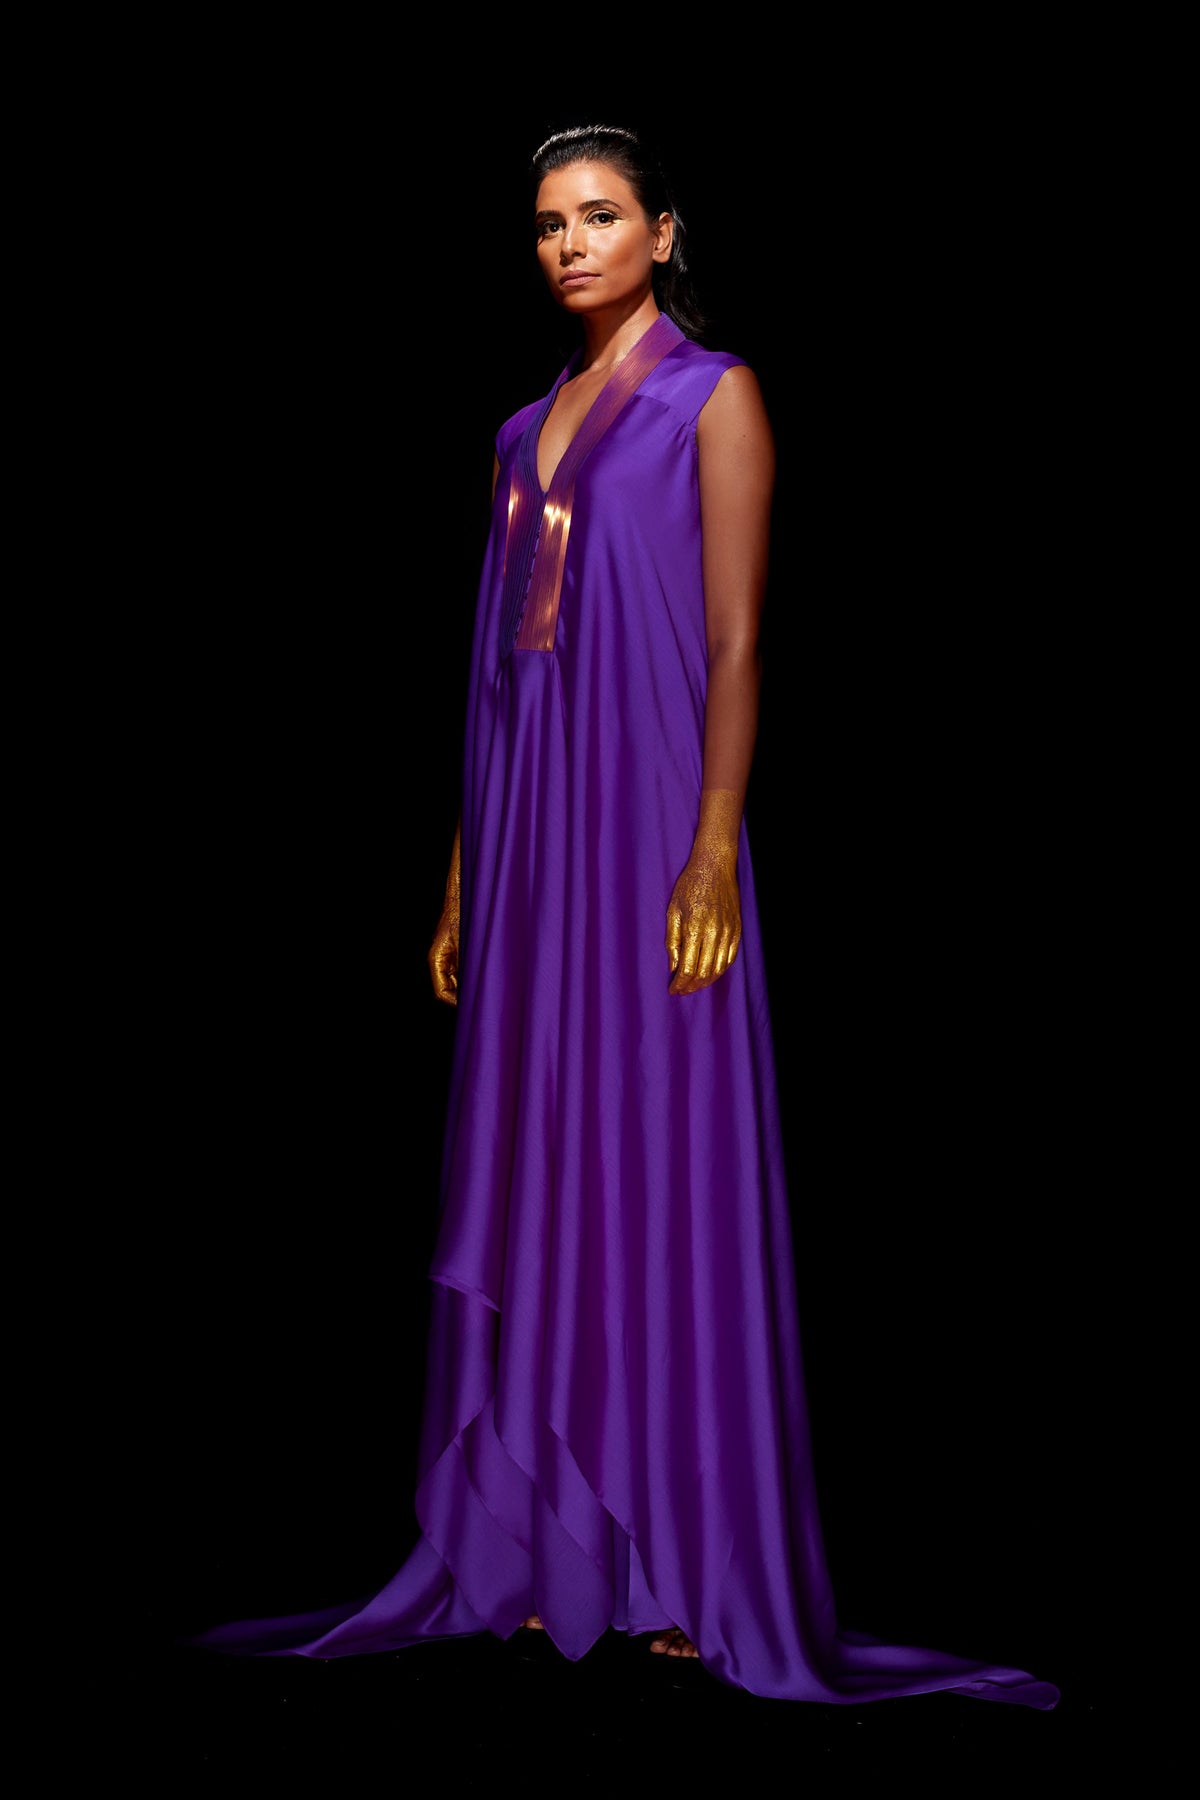 Metallic draped dress in purple